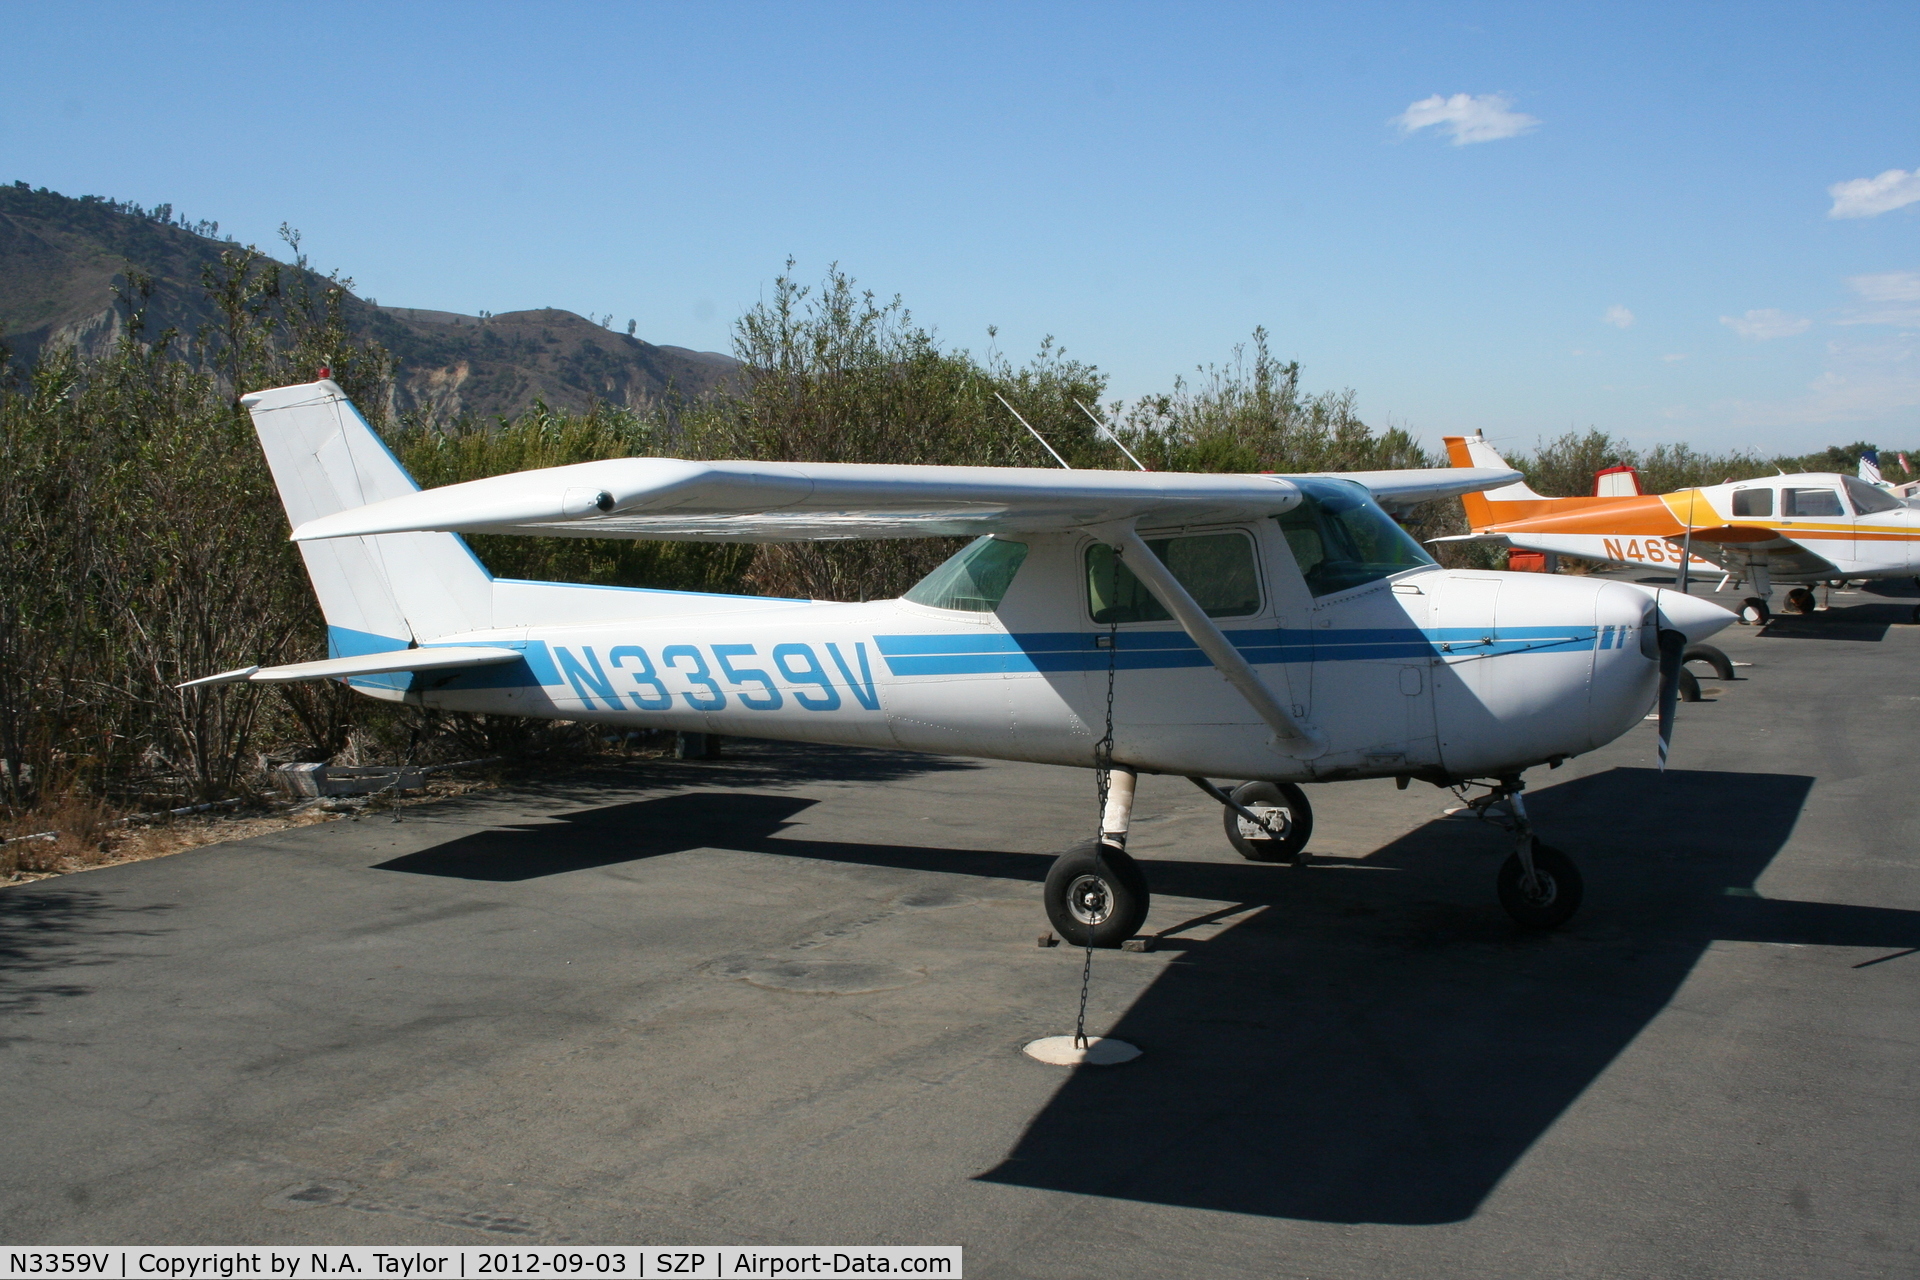 N3359V, 1974 Cessna 150M C/N 15076473, Parked along the river